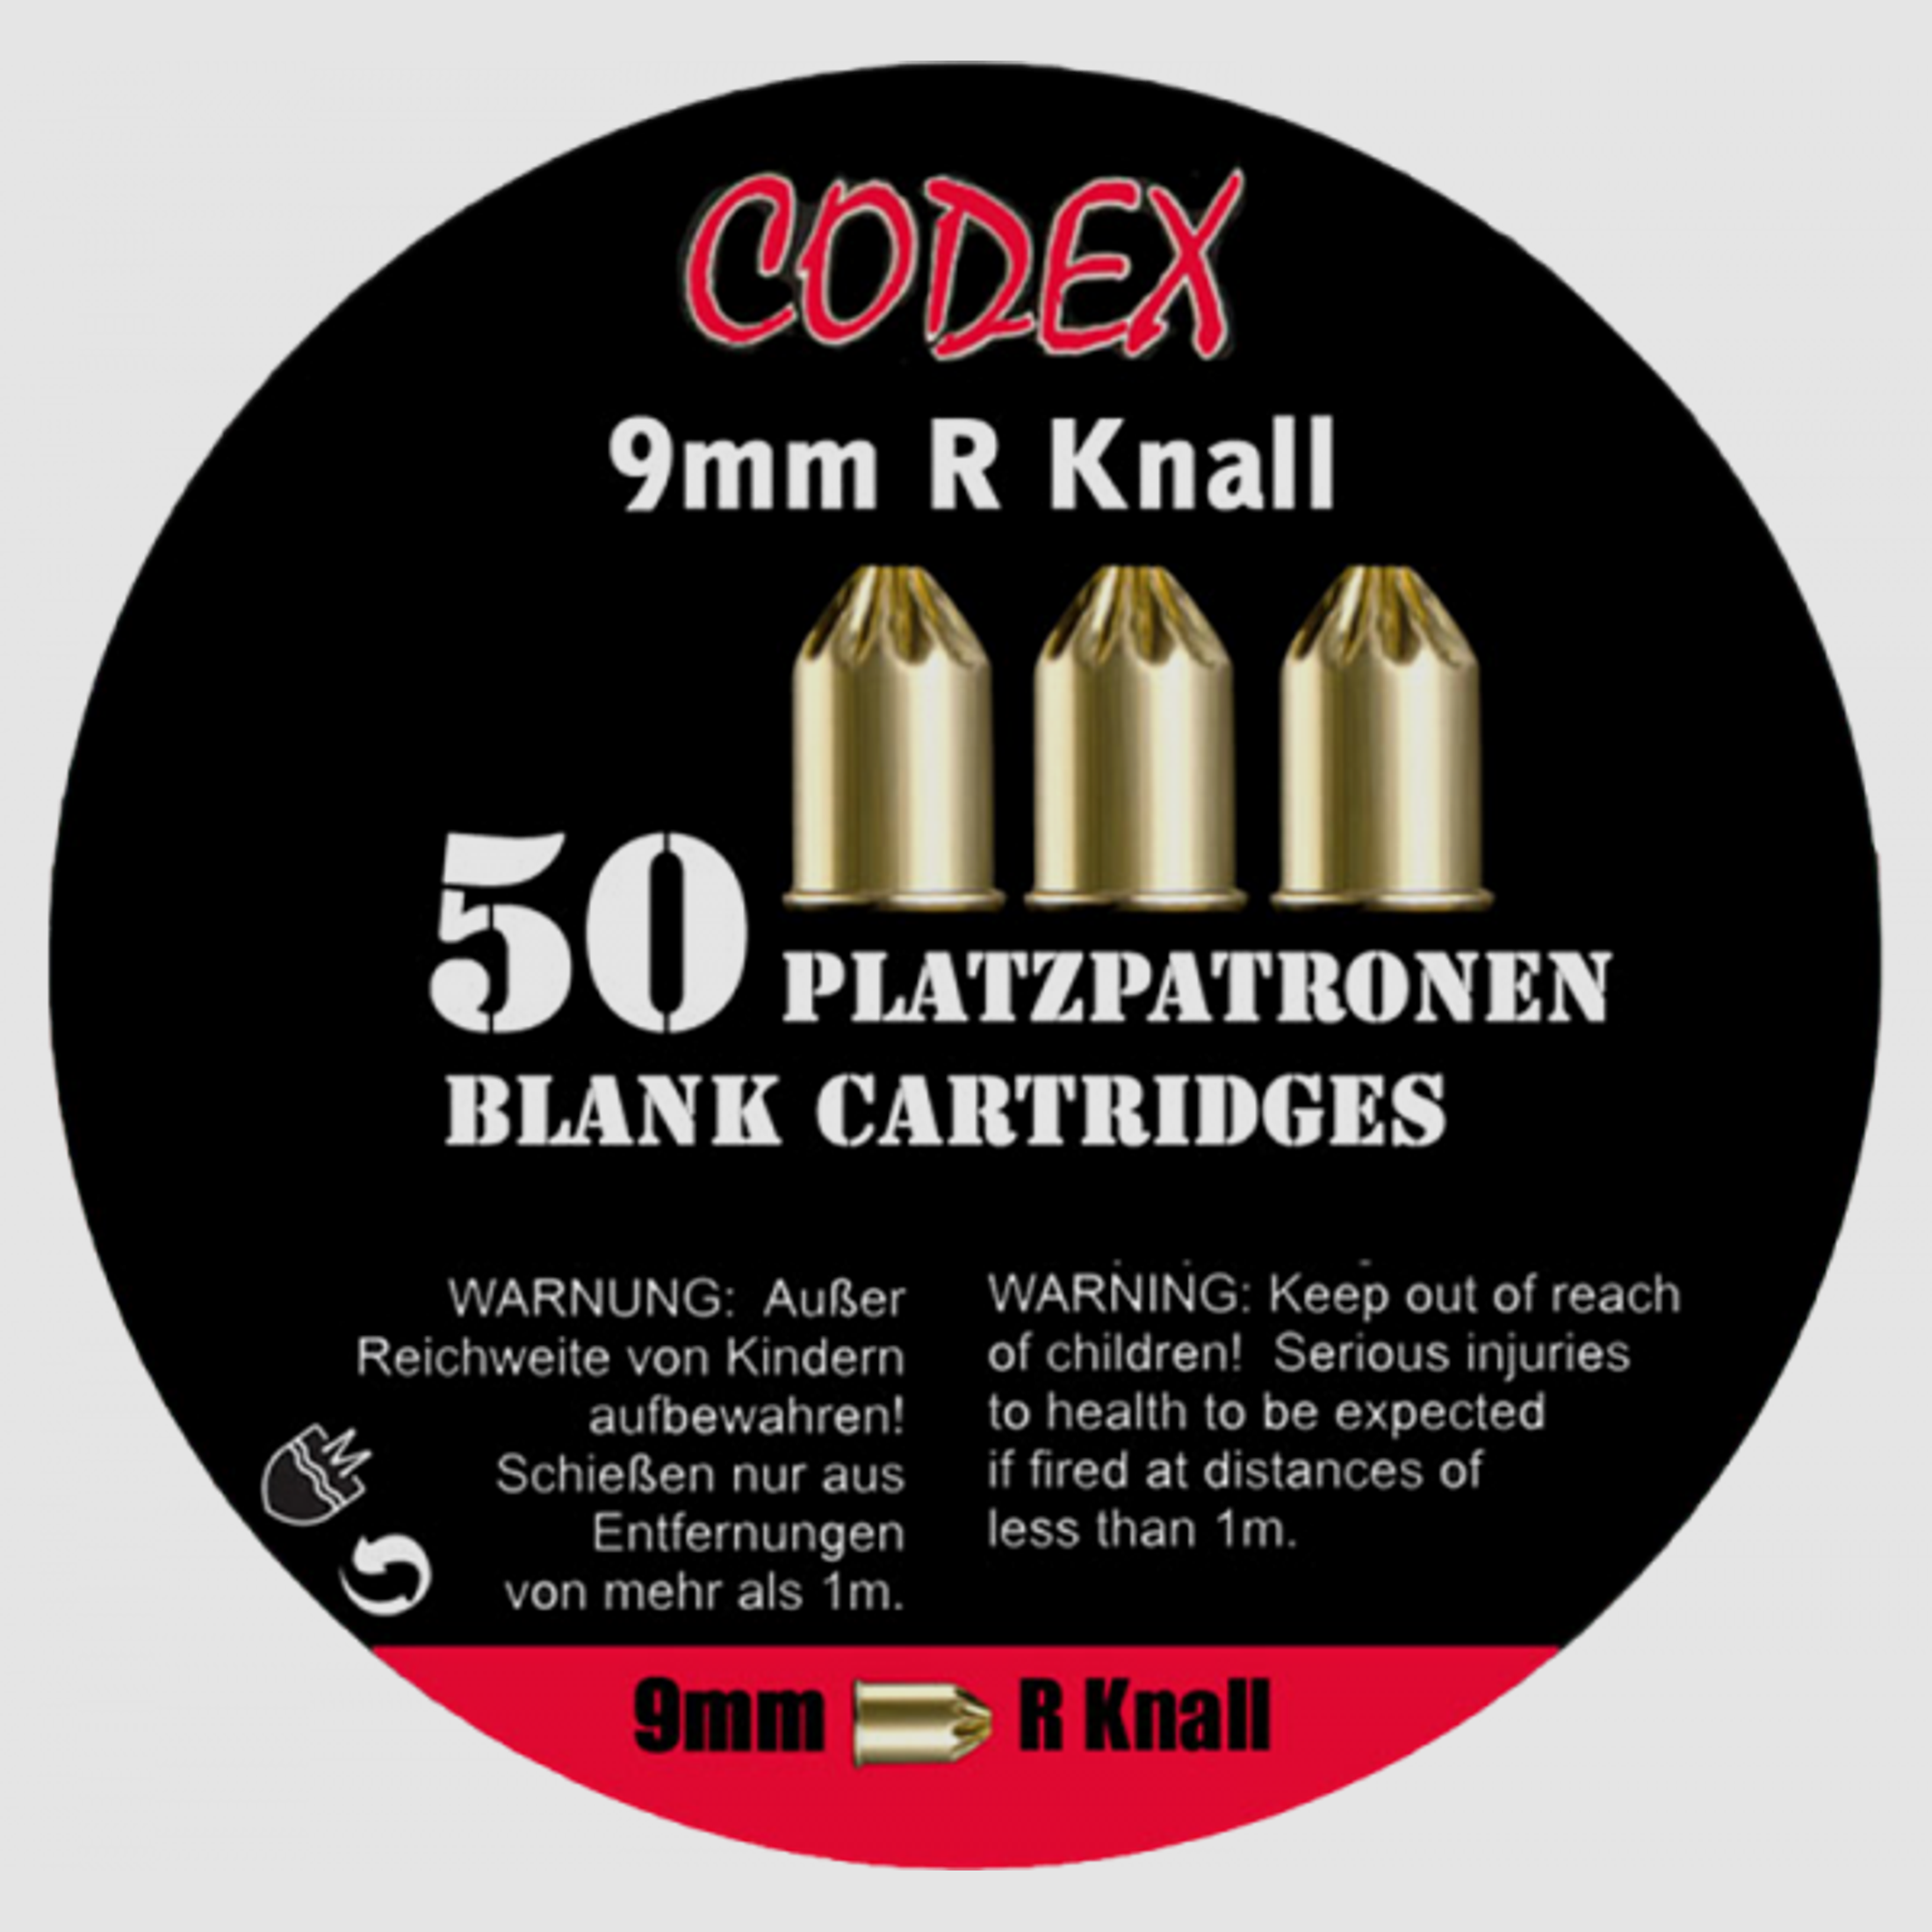 Codex 9mm R Knall Schreckschusspatronen